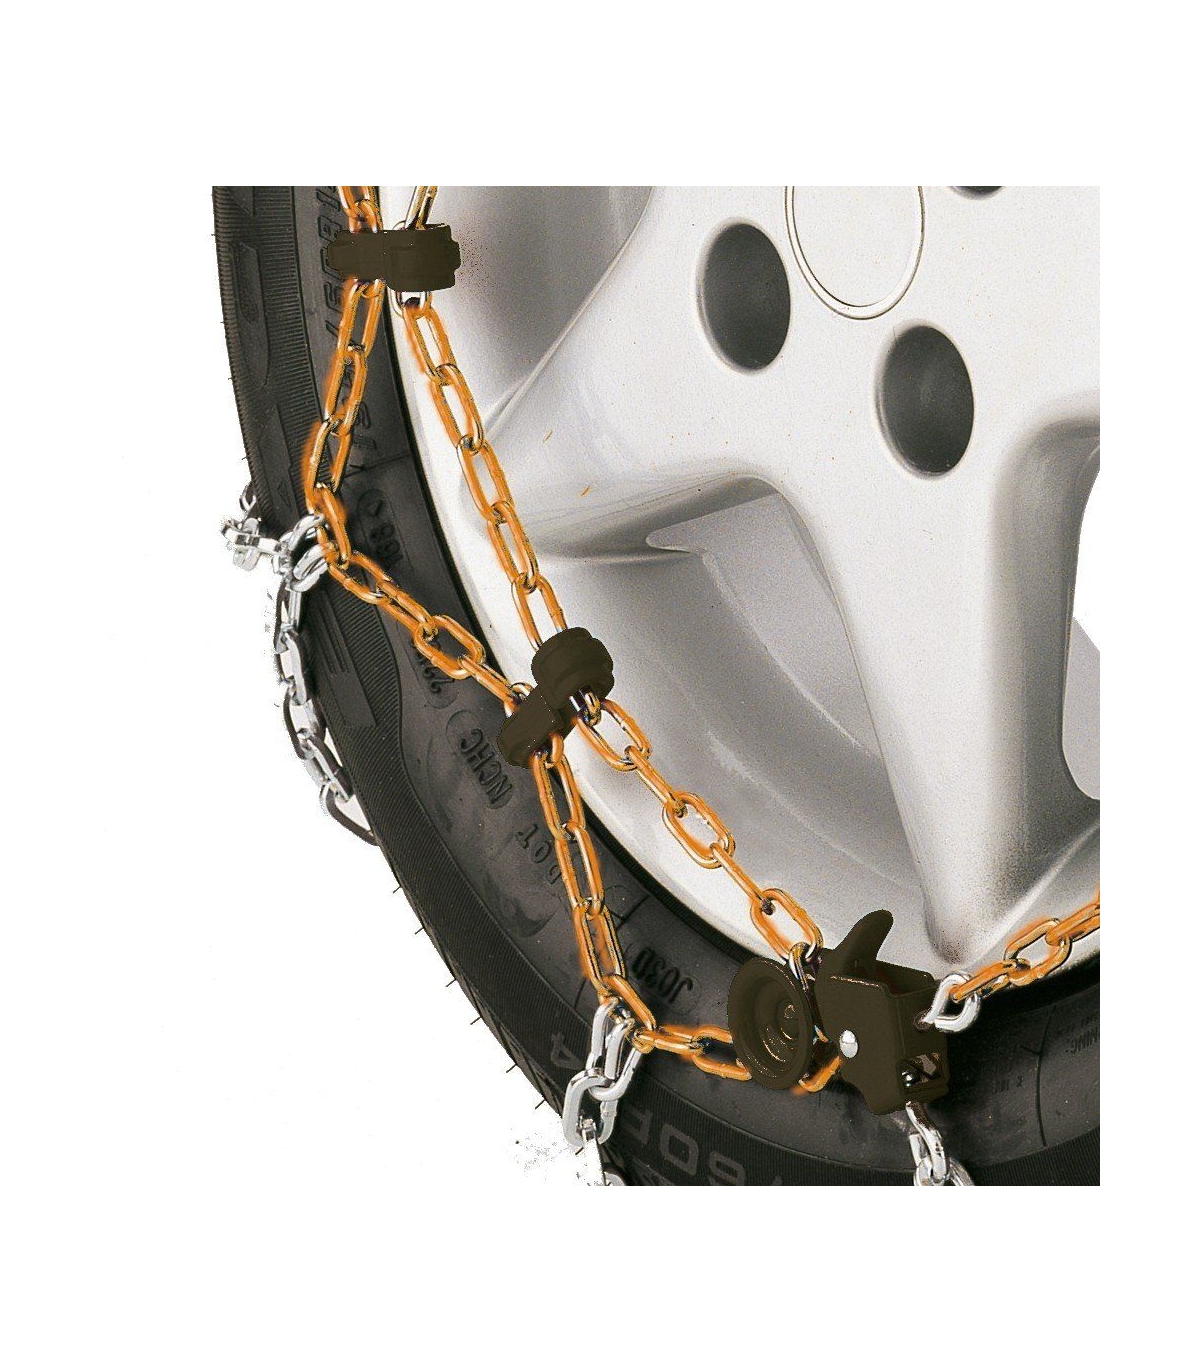 Chaine neige 9mm pneu 195/55R20 montage rapide sécurité garantie